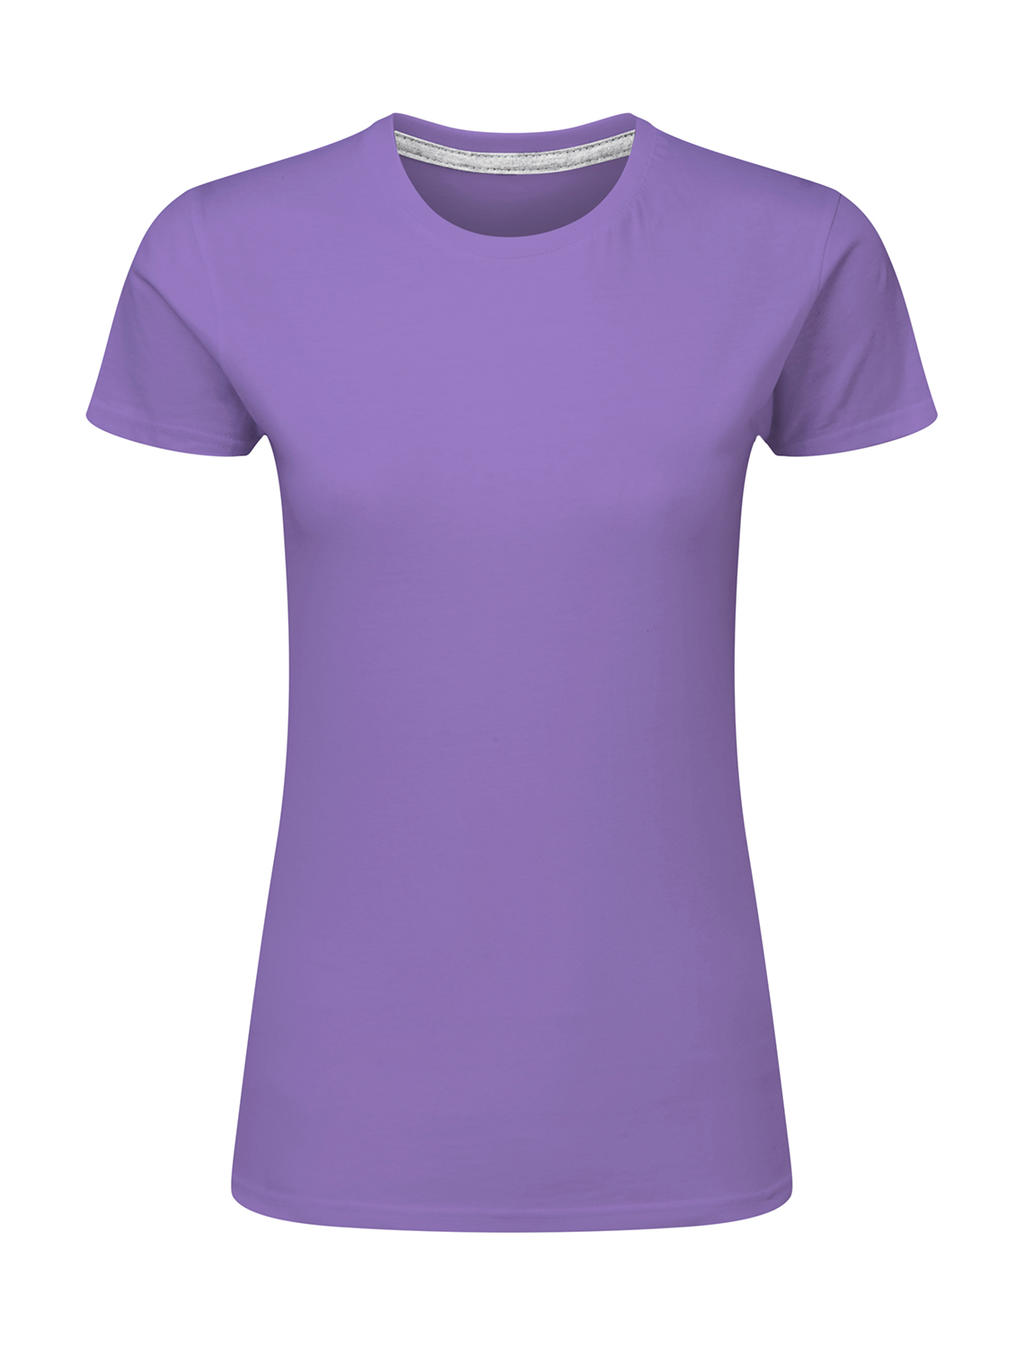 Dokonale potlačiteľné dámske tričko bez štítku - aster purple